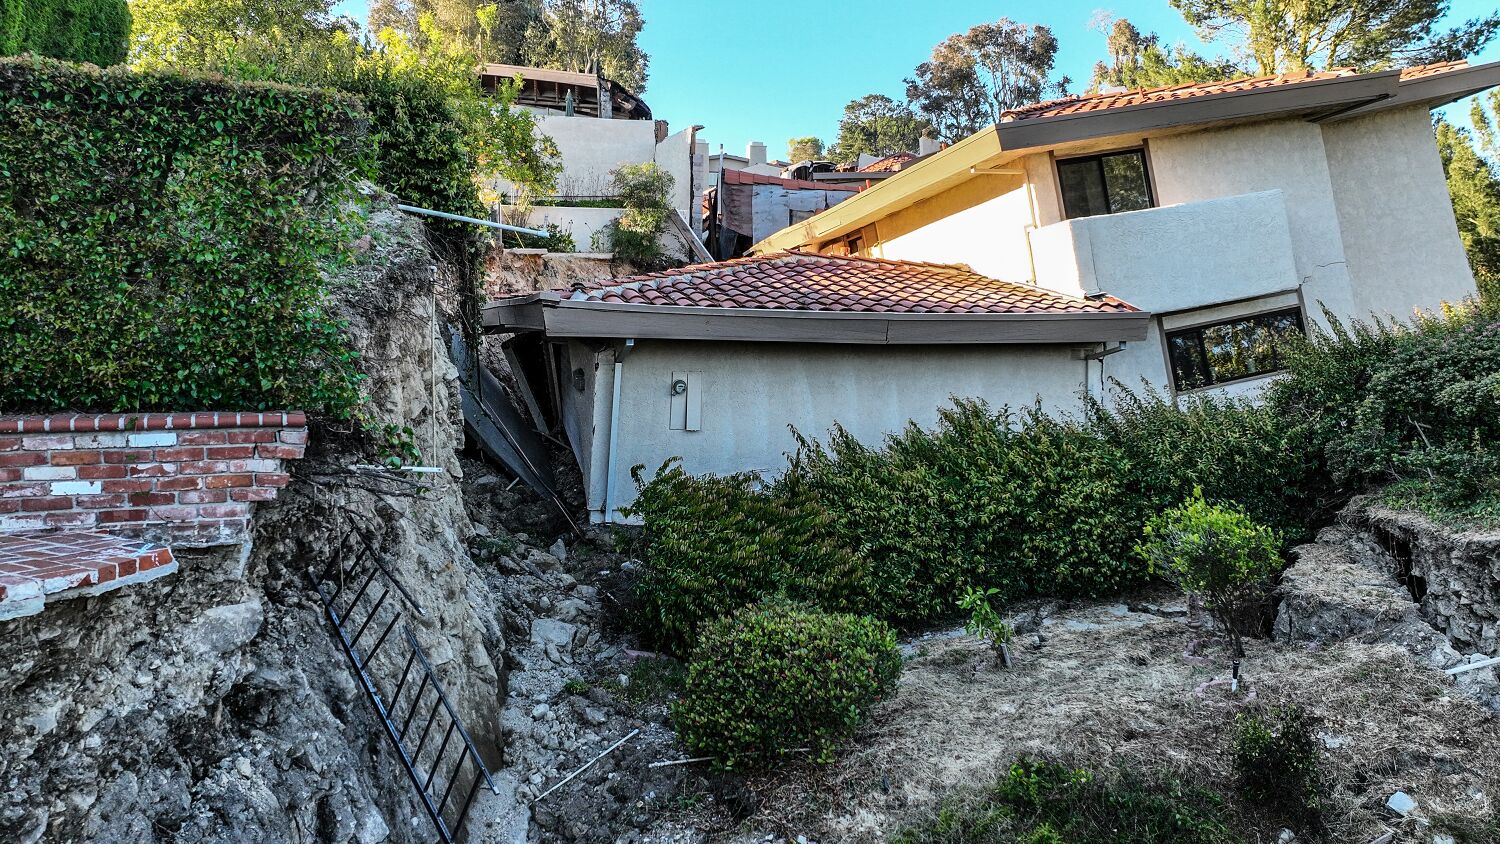 Home insurance seldom covers landslide damage